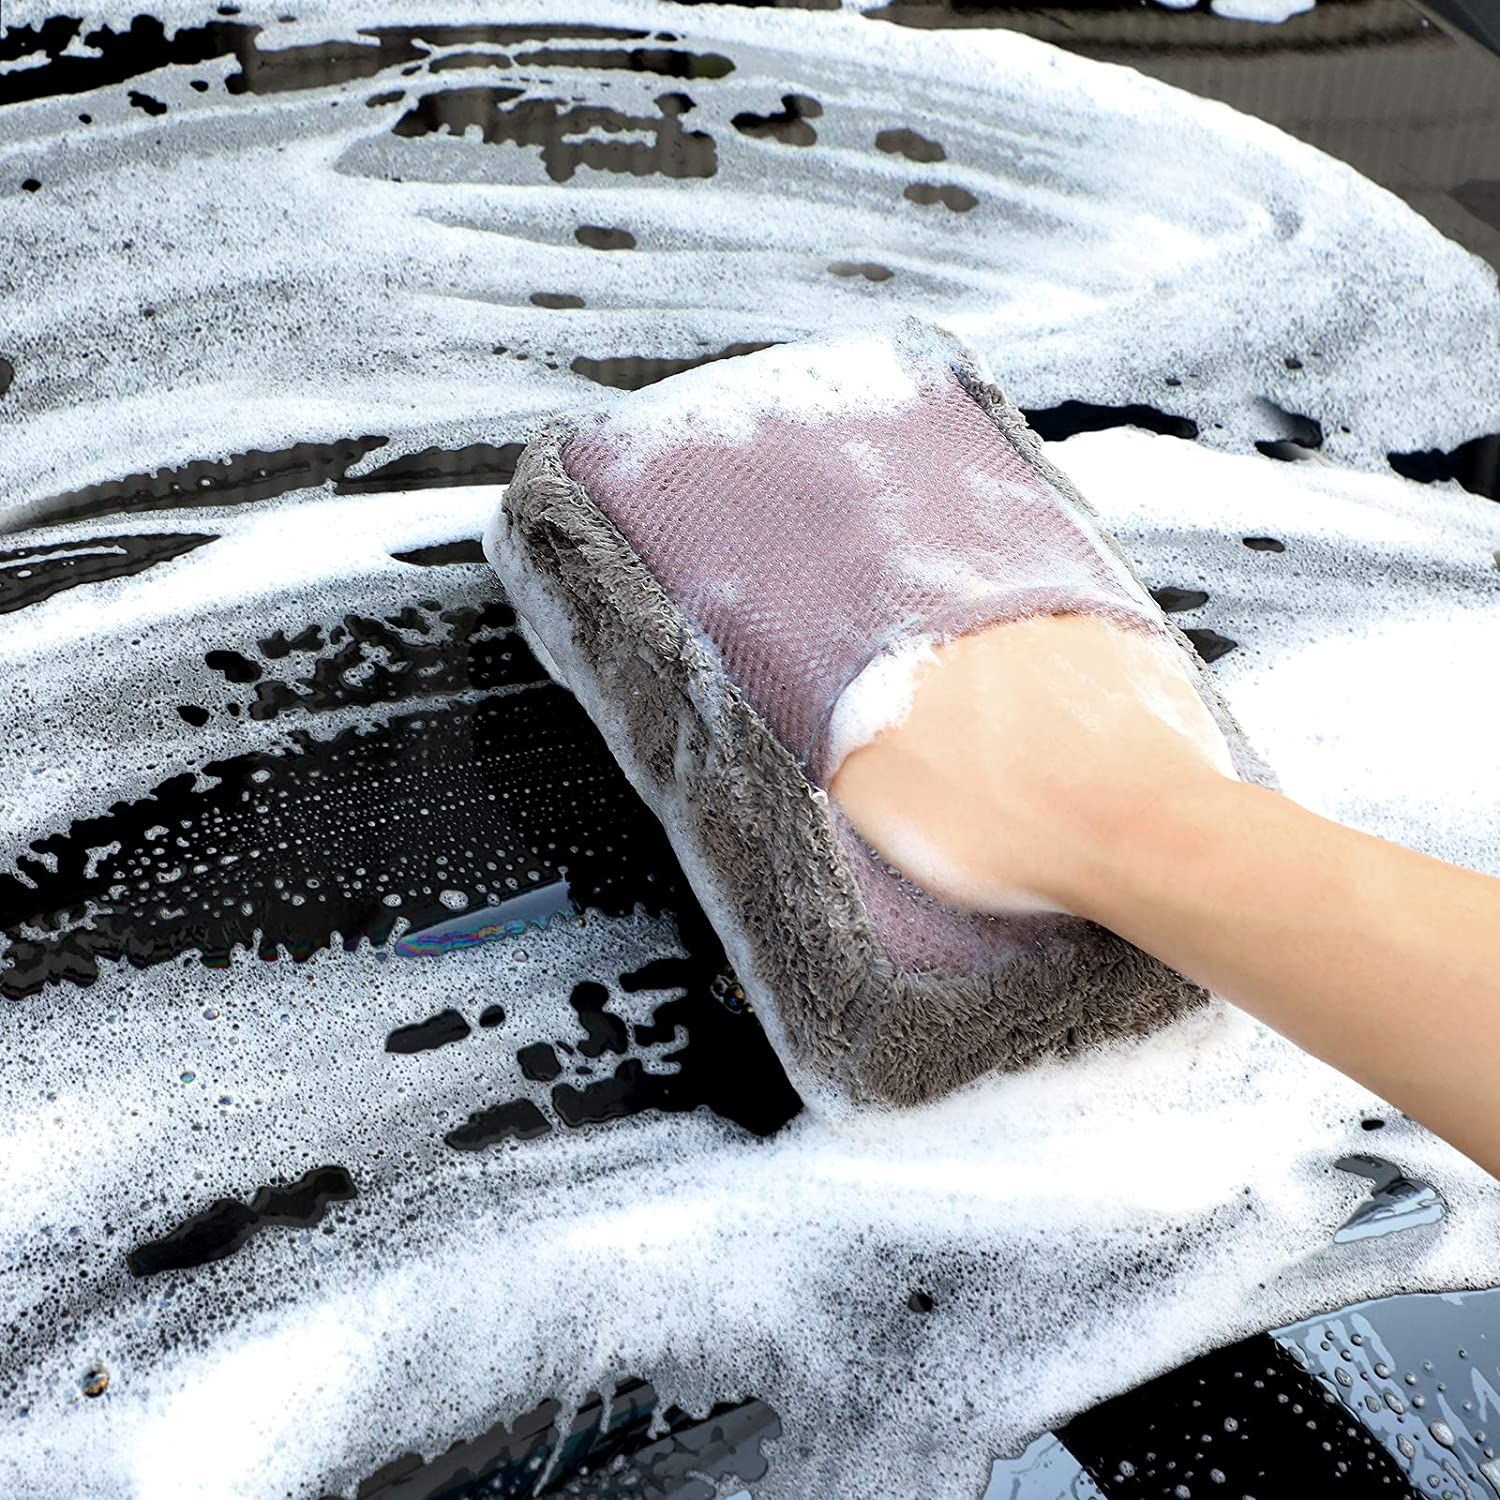 Kit de limpieza de coches spnoge amazon